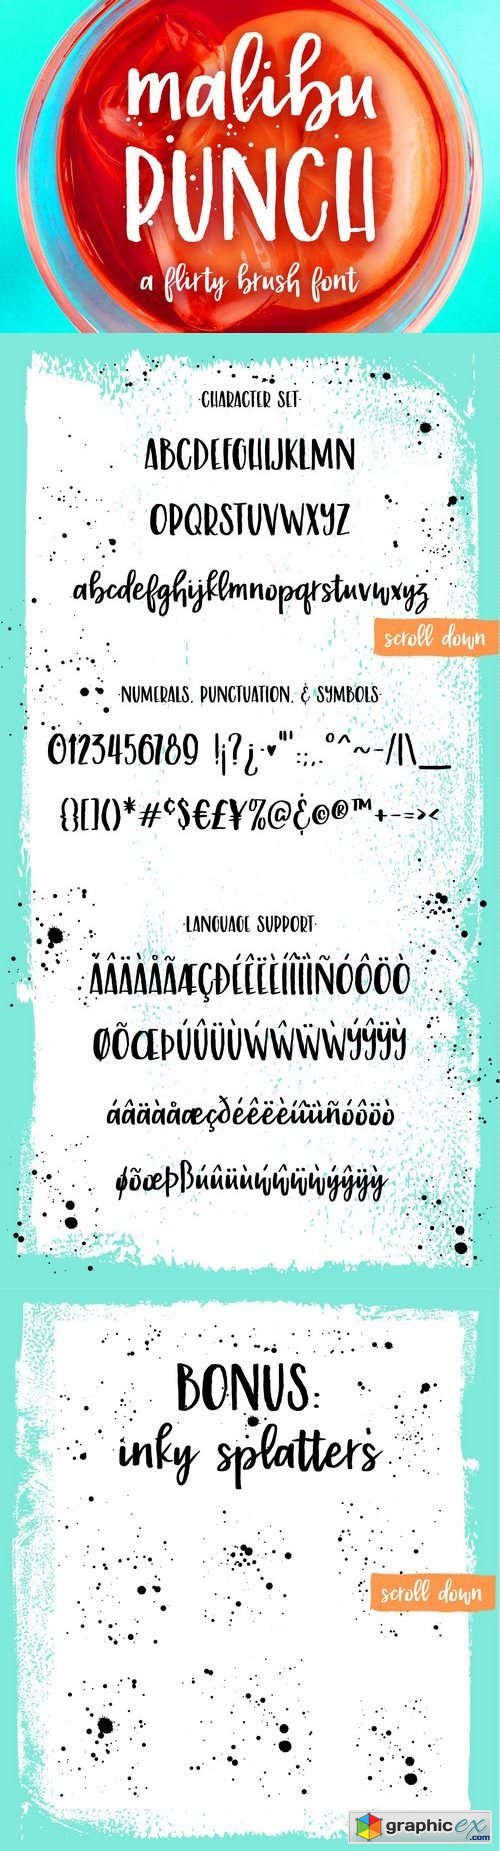 Malibu Punch, a textured brush font